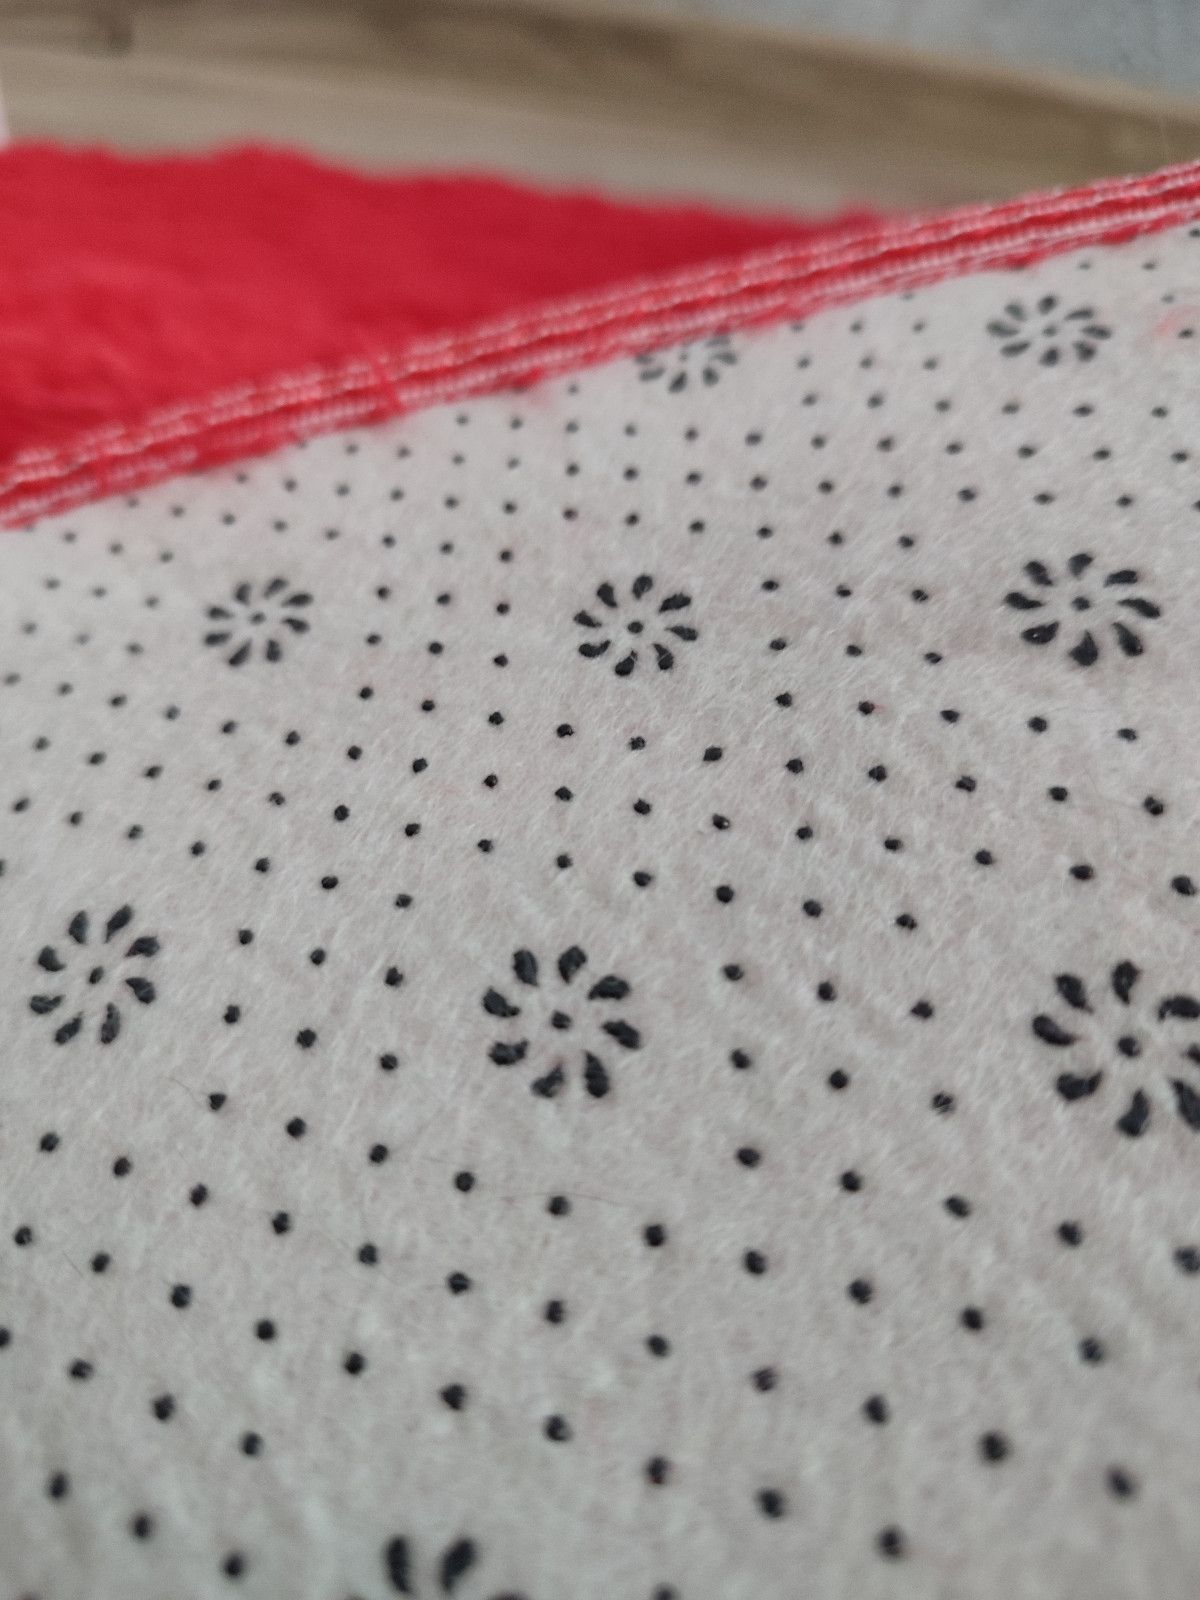 Nowy czerwony dywan puszysty okrągły 80 cm